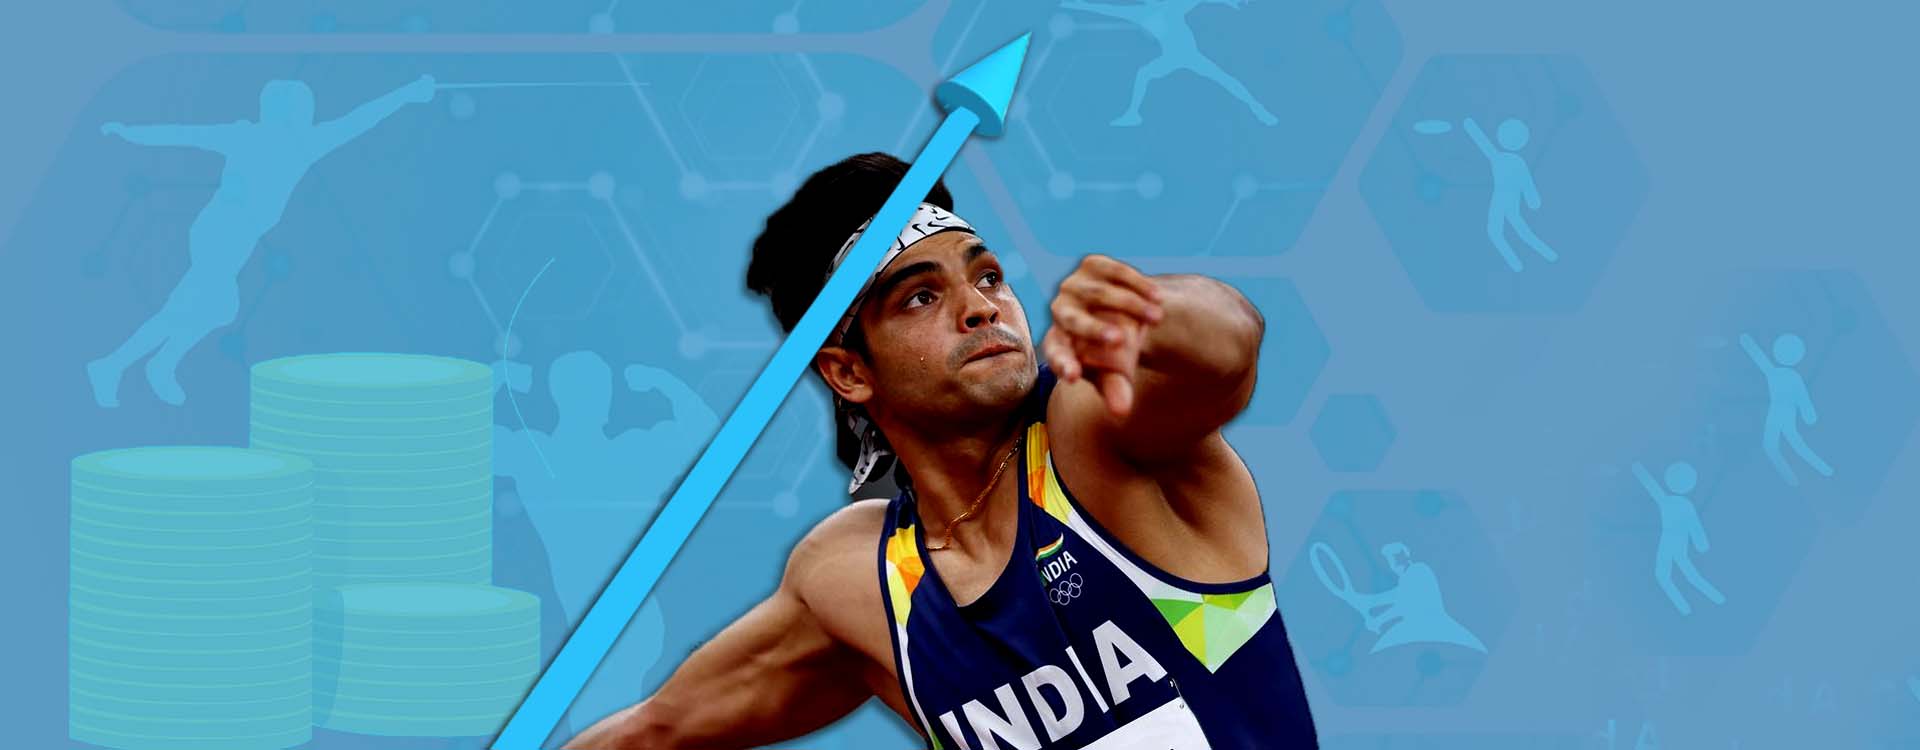 Olympics India 2021 Olympian Neeraj Chopra Learnings For Entrepreneurs